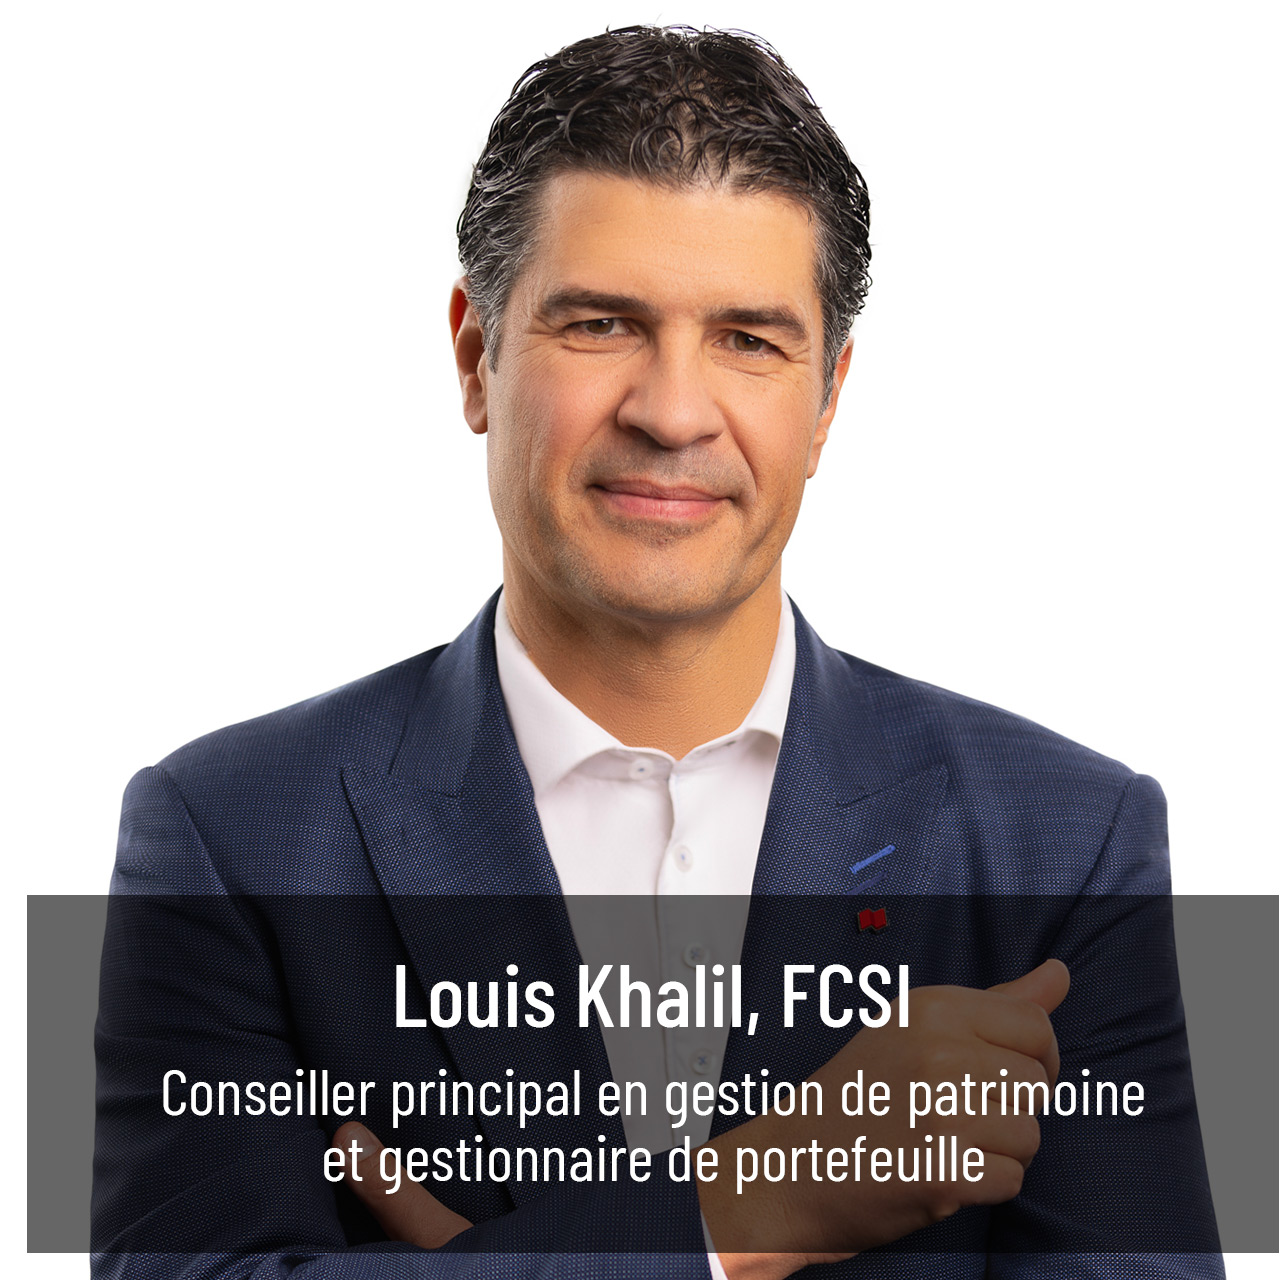 Louis Khalil